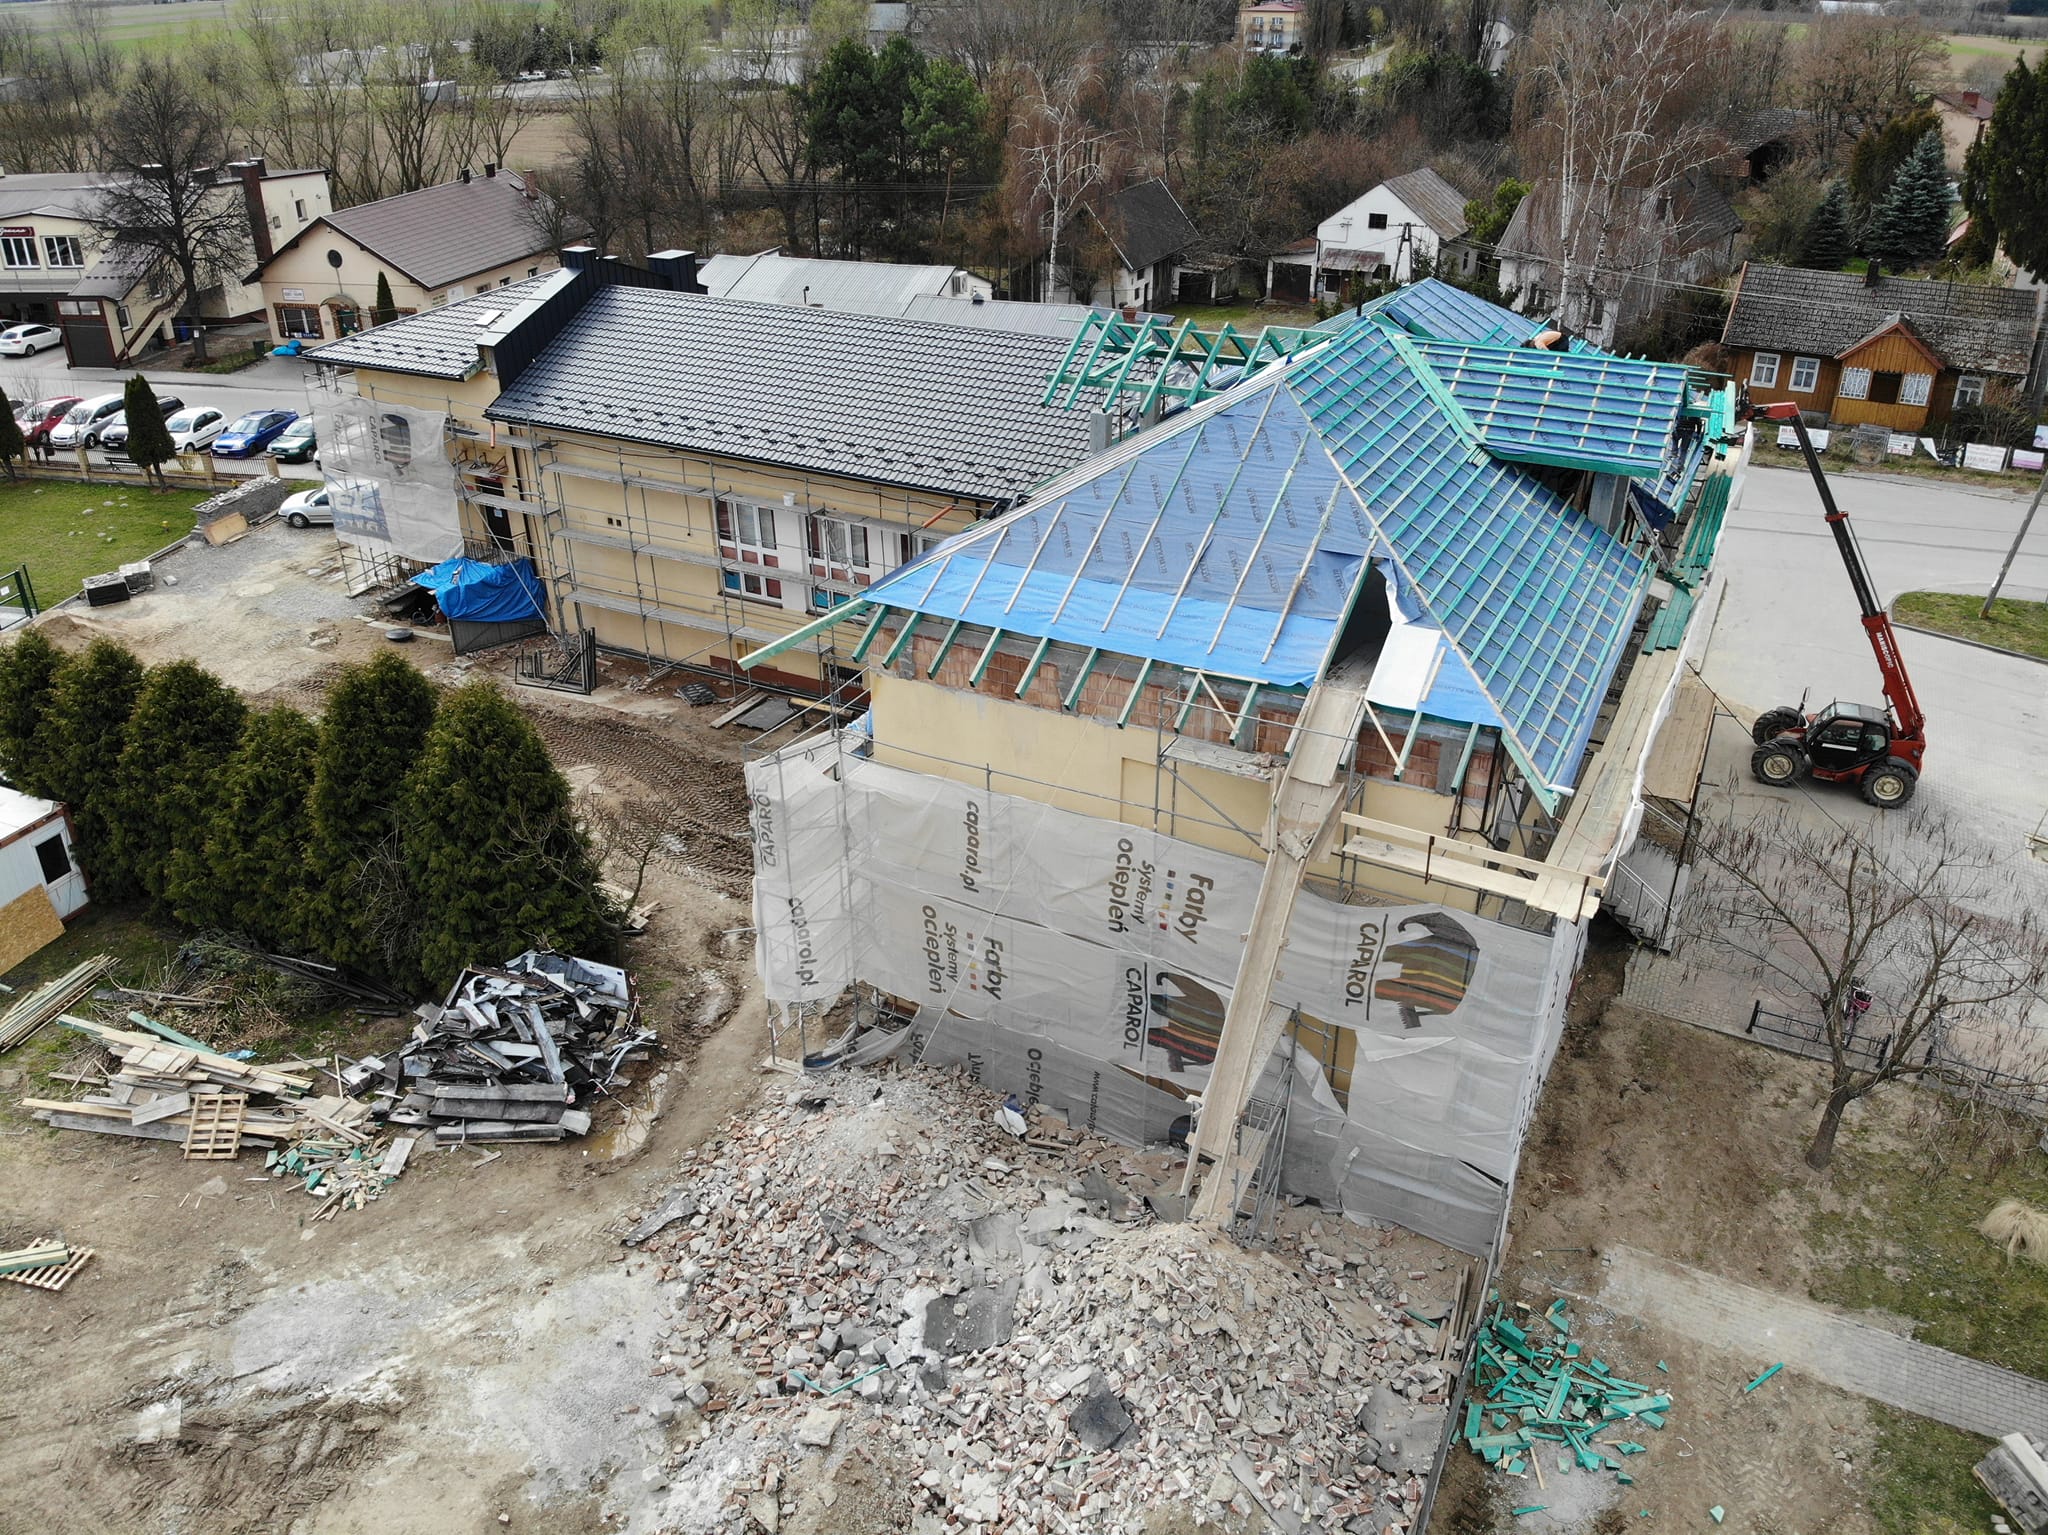 zdjęcie przedstawia widok na budynek urzędu gminy w trakcie remontu z lotu ptaka